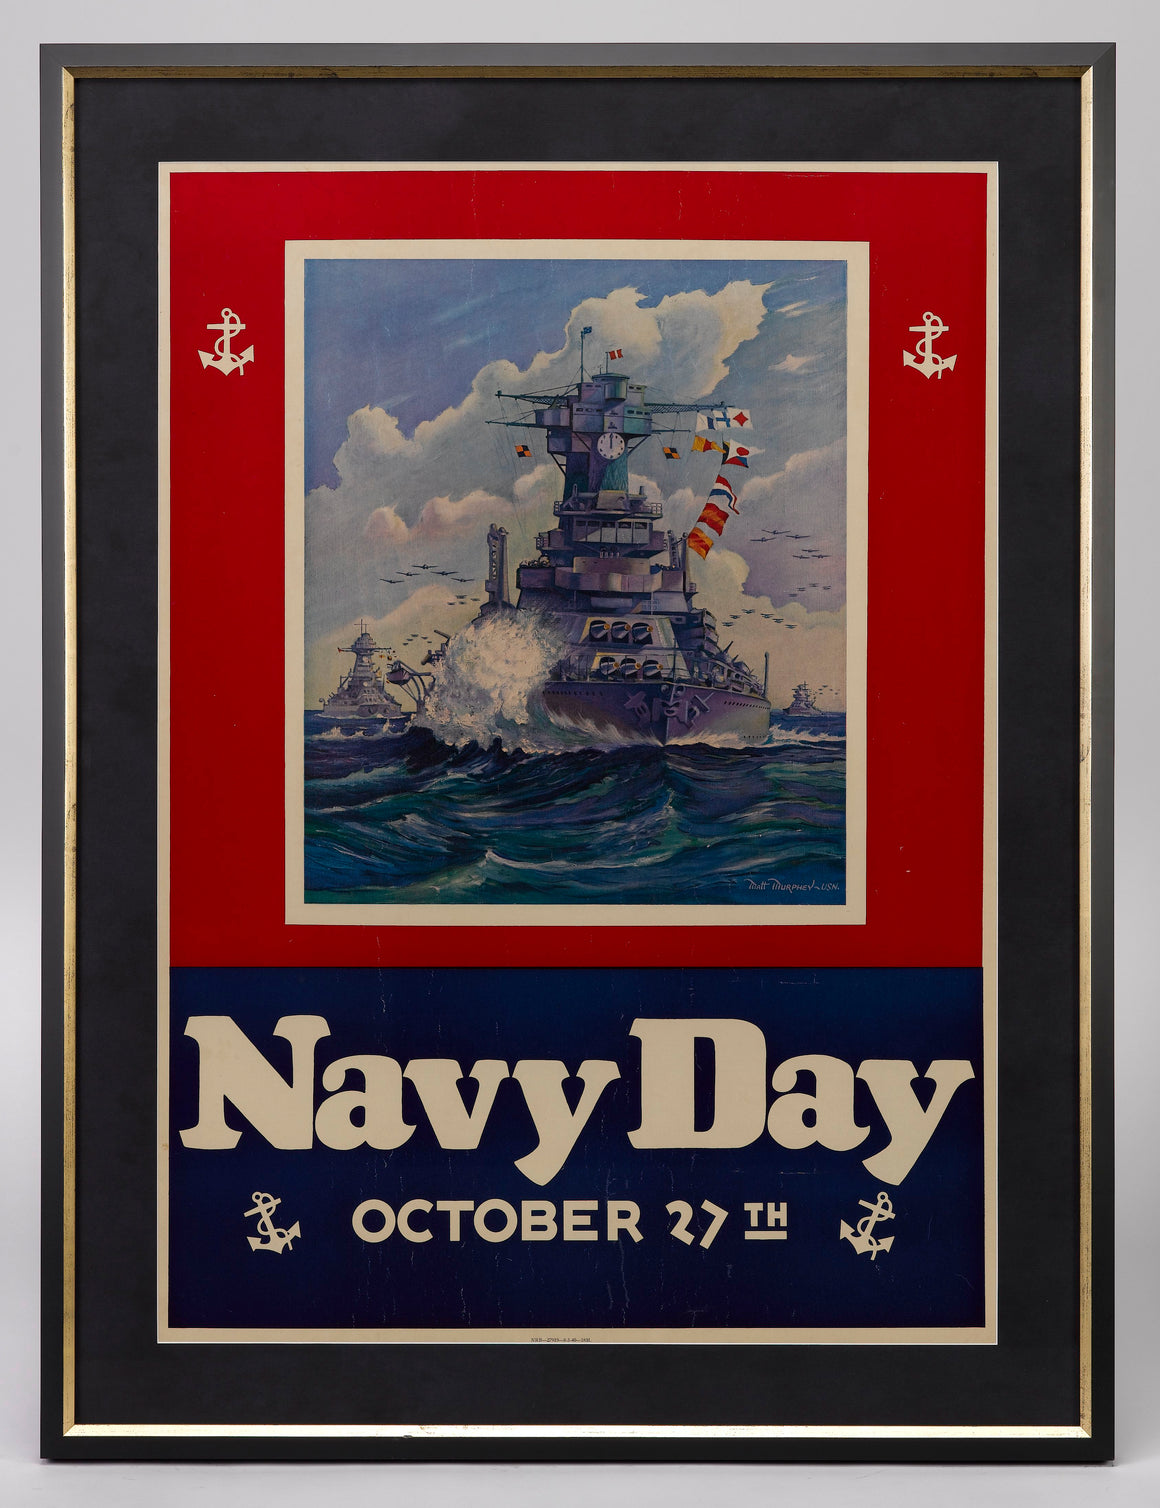 "Navy Day October 27th" Poster by Matt Murphey, 1940